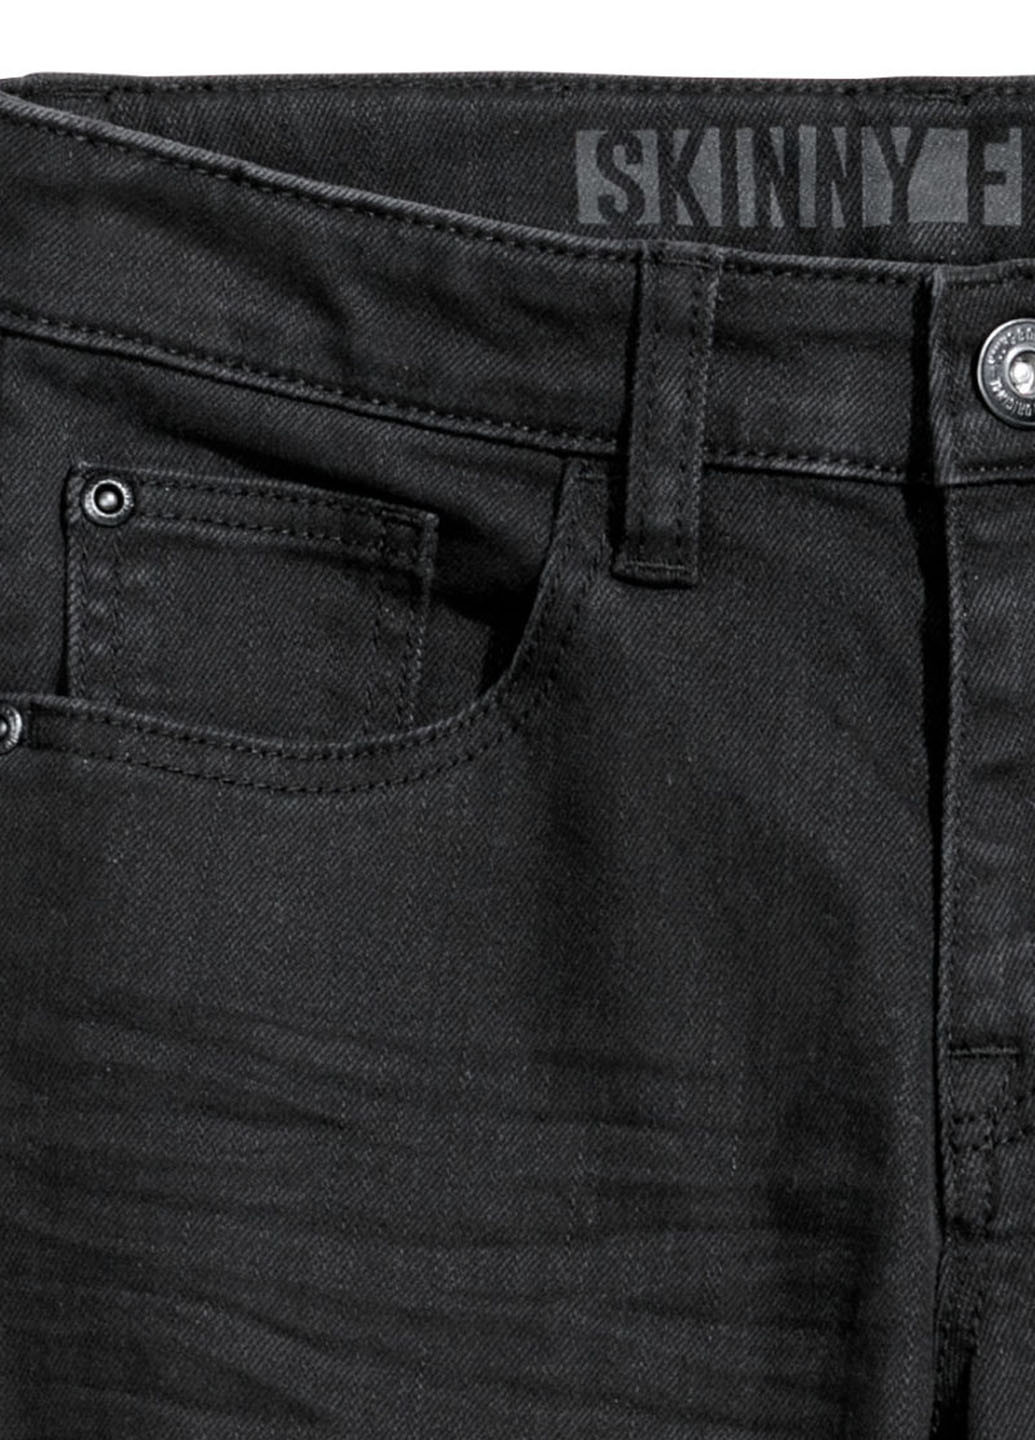 Грифельно-серые демисезонные зауженные джинсы H&M